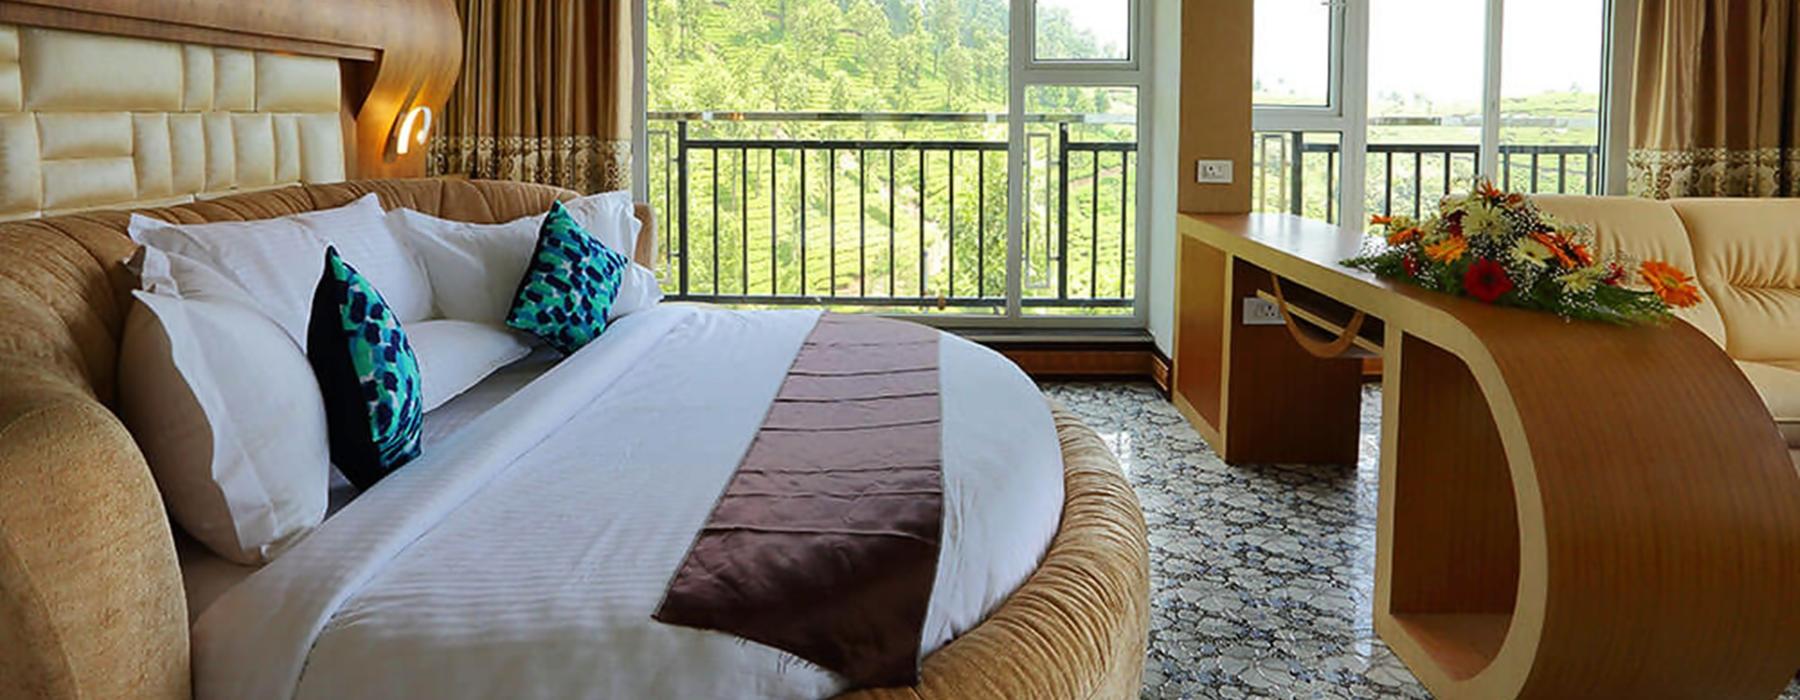 Parakkat Nature Hotels and Resorts